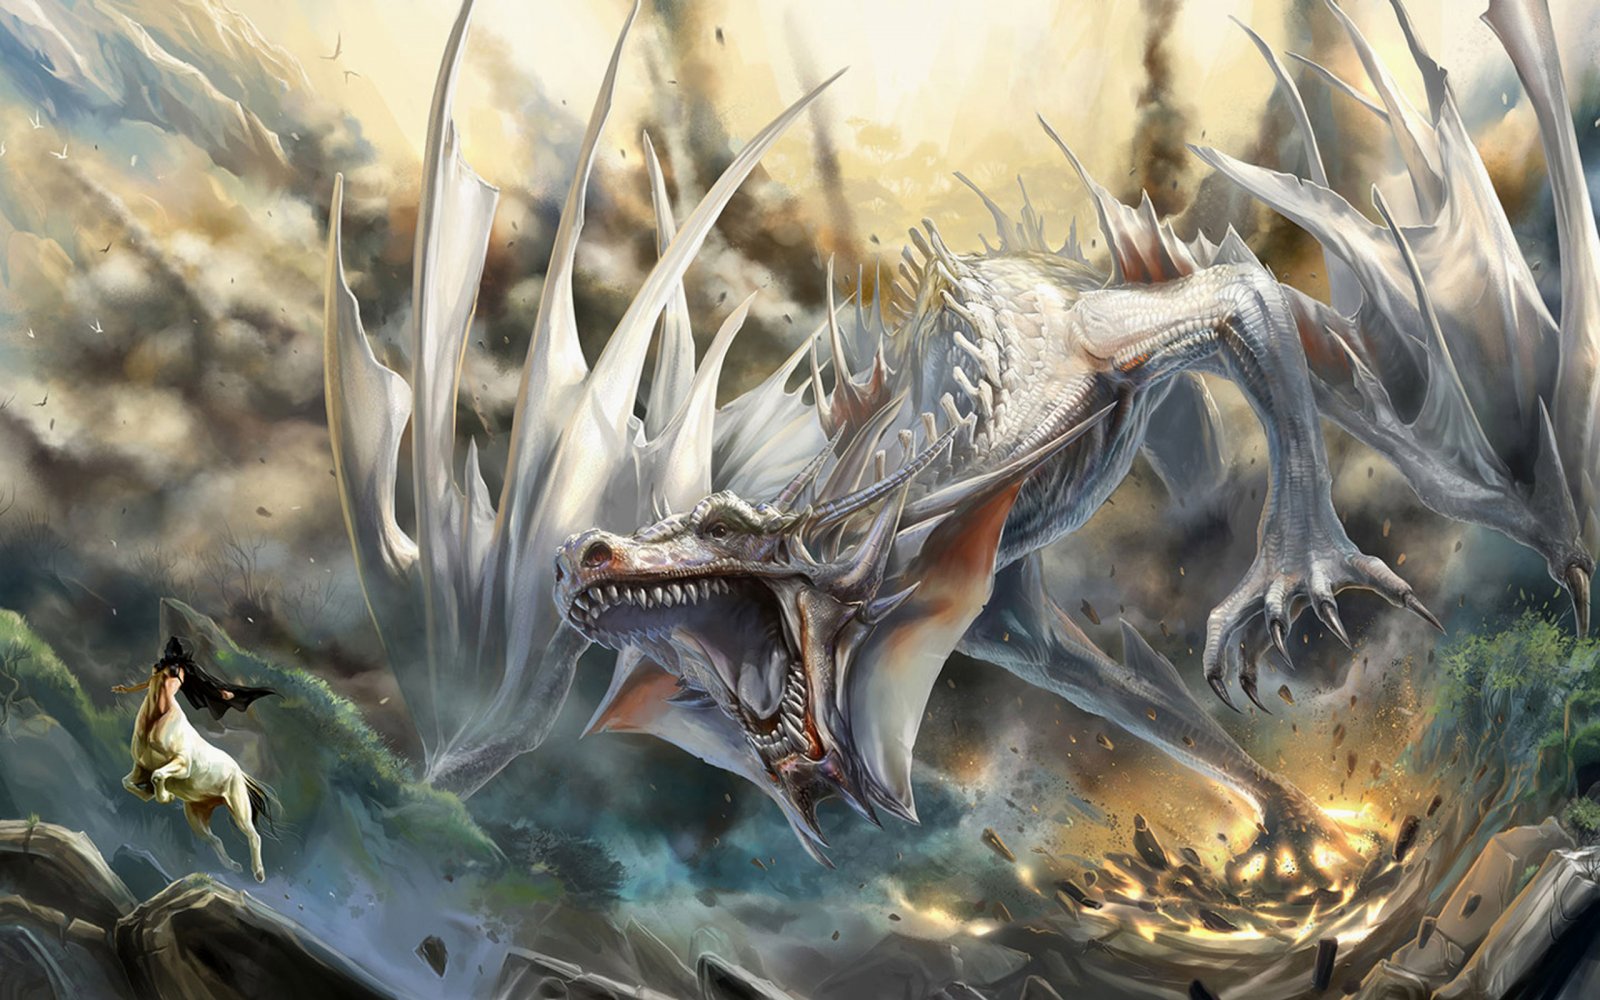 dragoni wallpaper hd,drago,cg artwork,personaggio fittizio,mitologia,creatura mitica